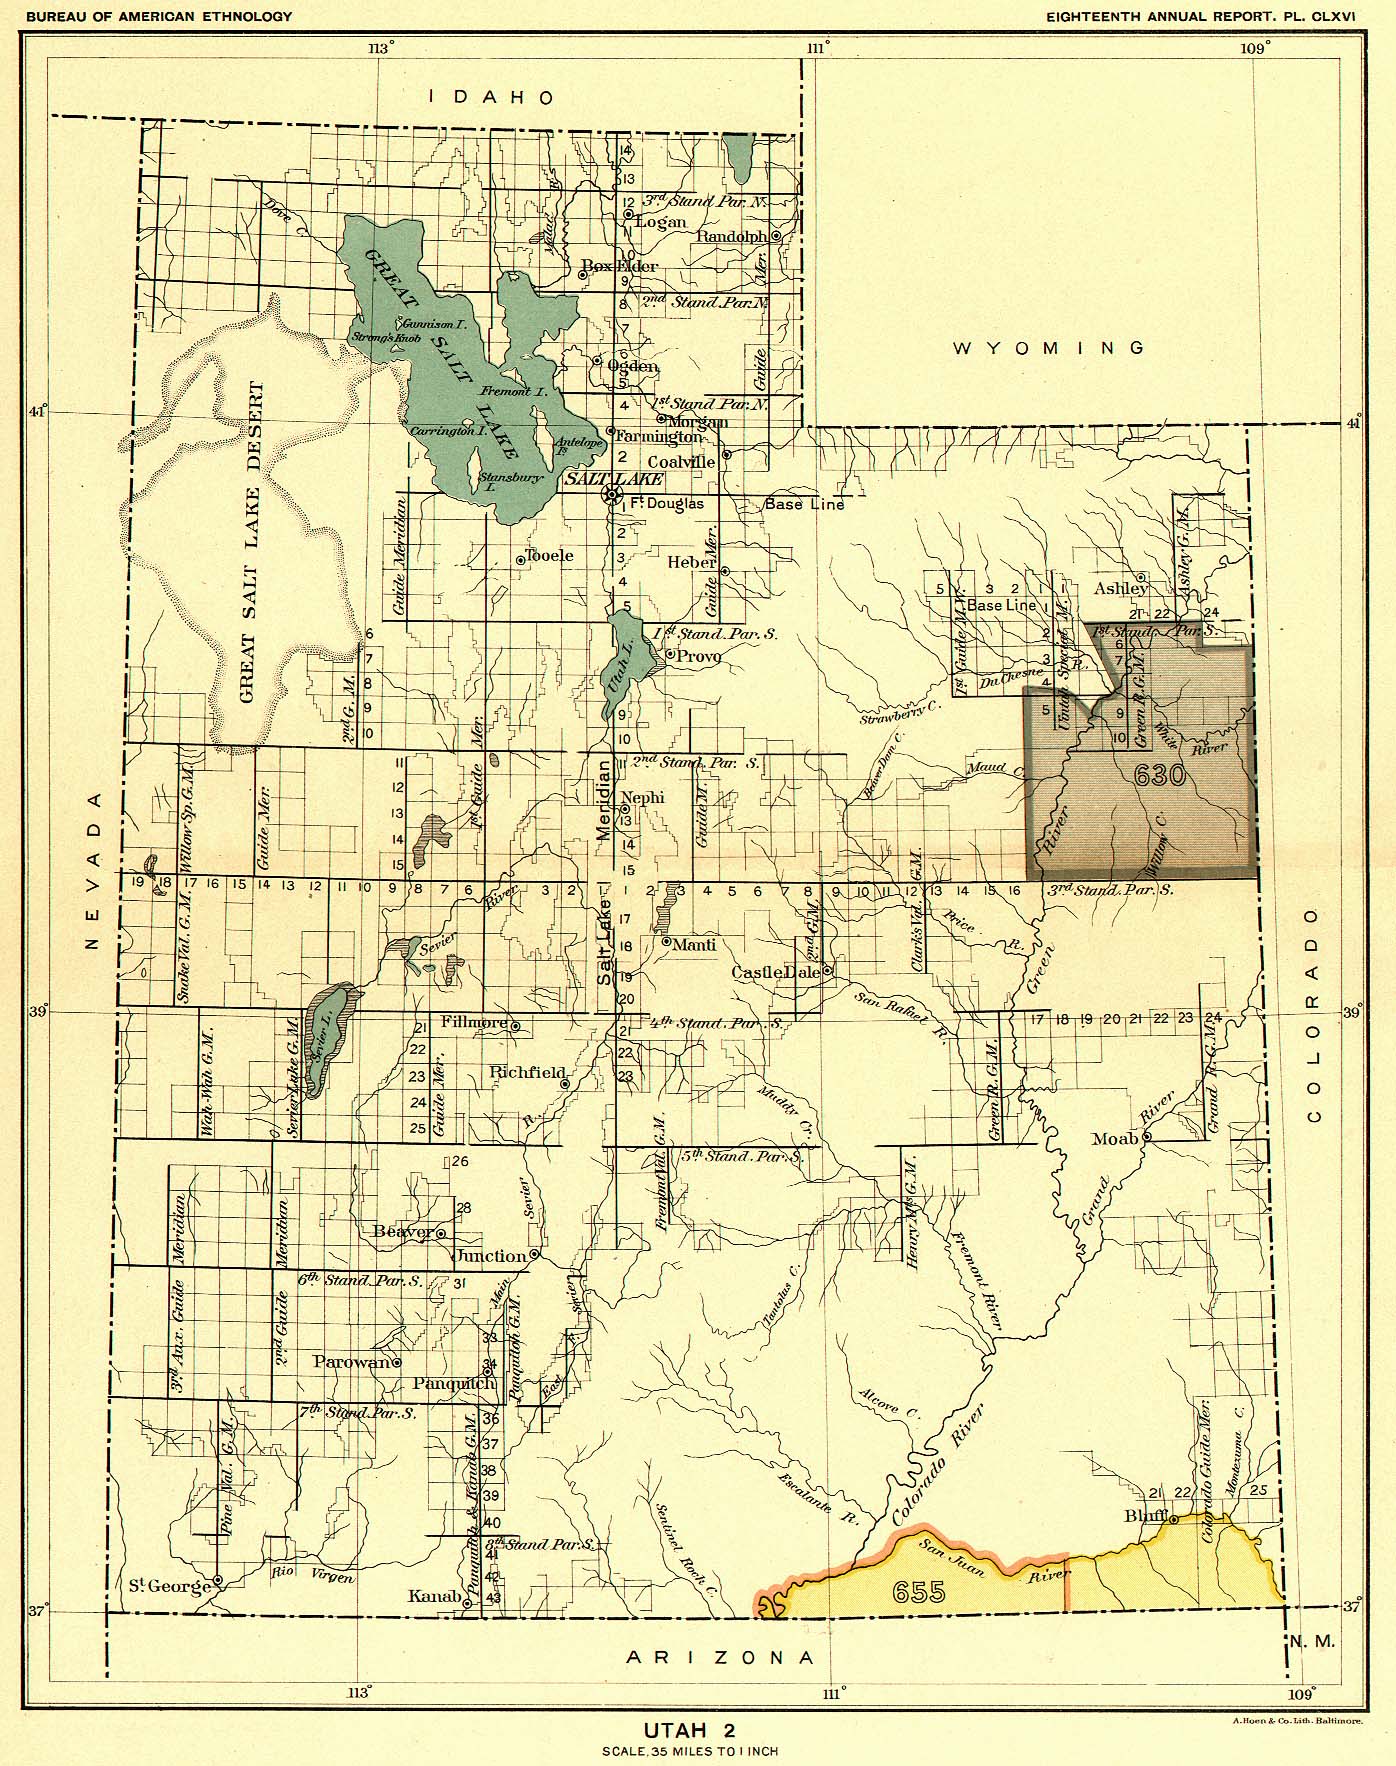 Utah 2, Map 59